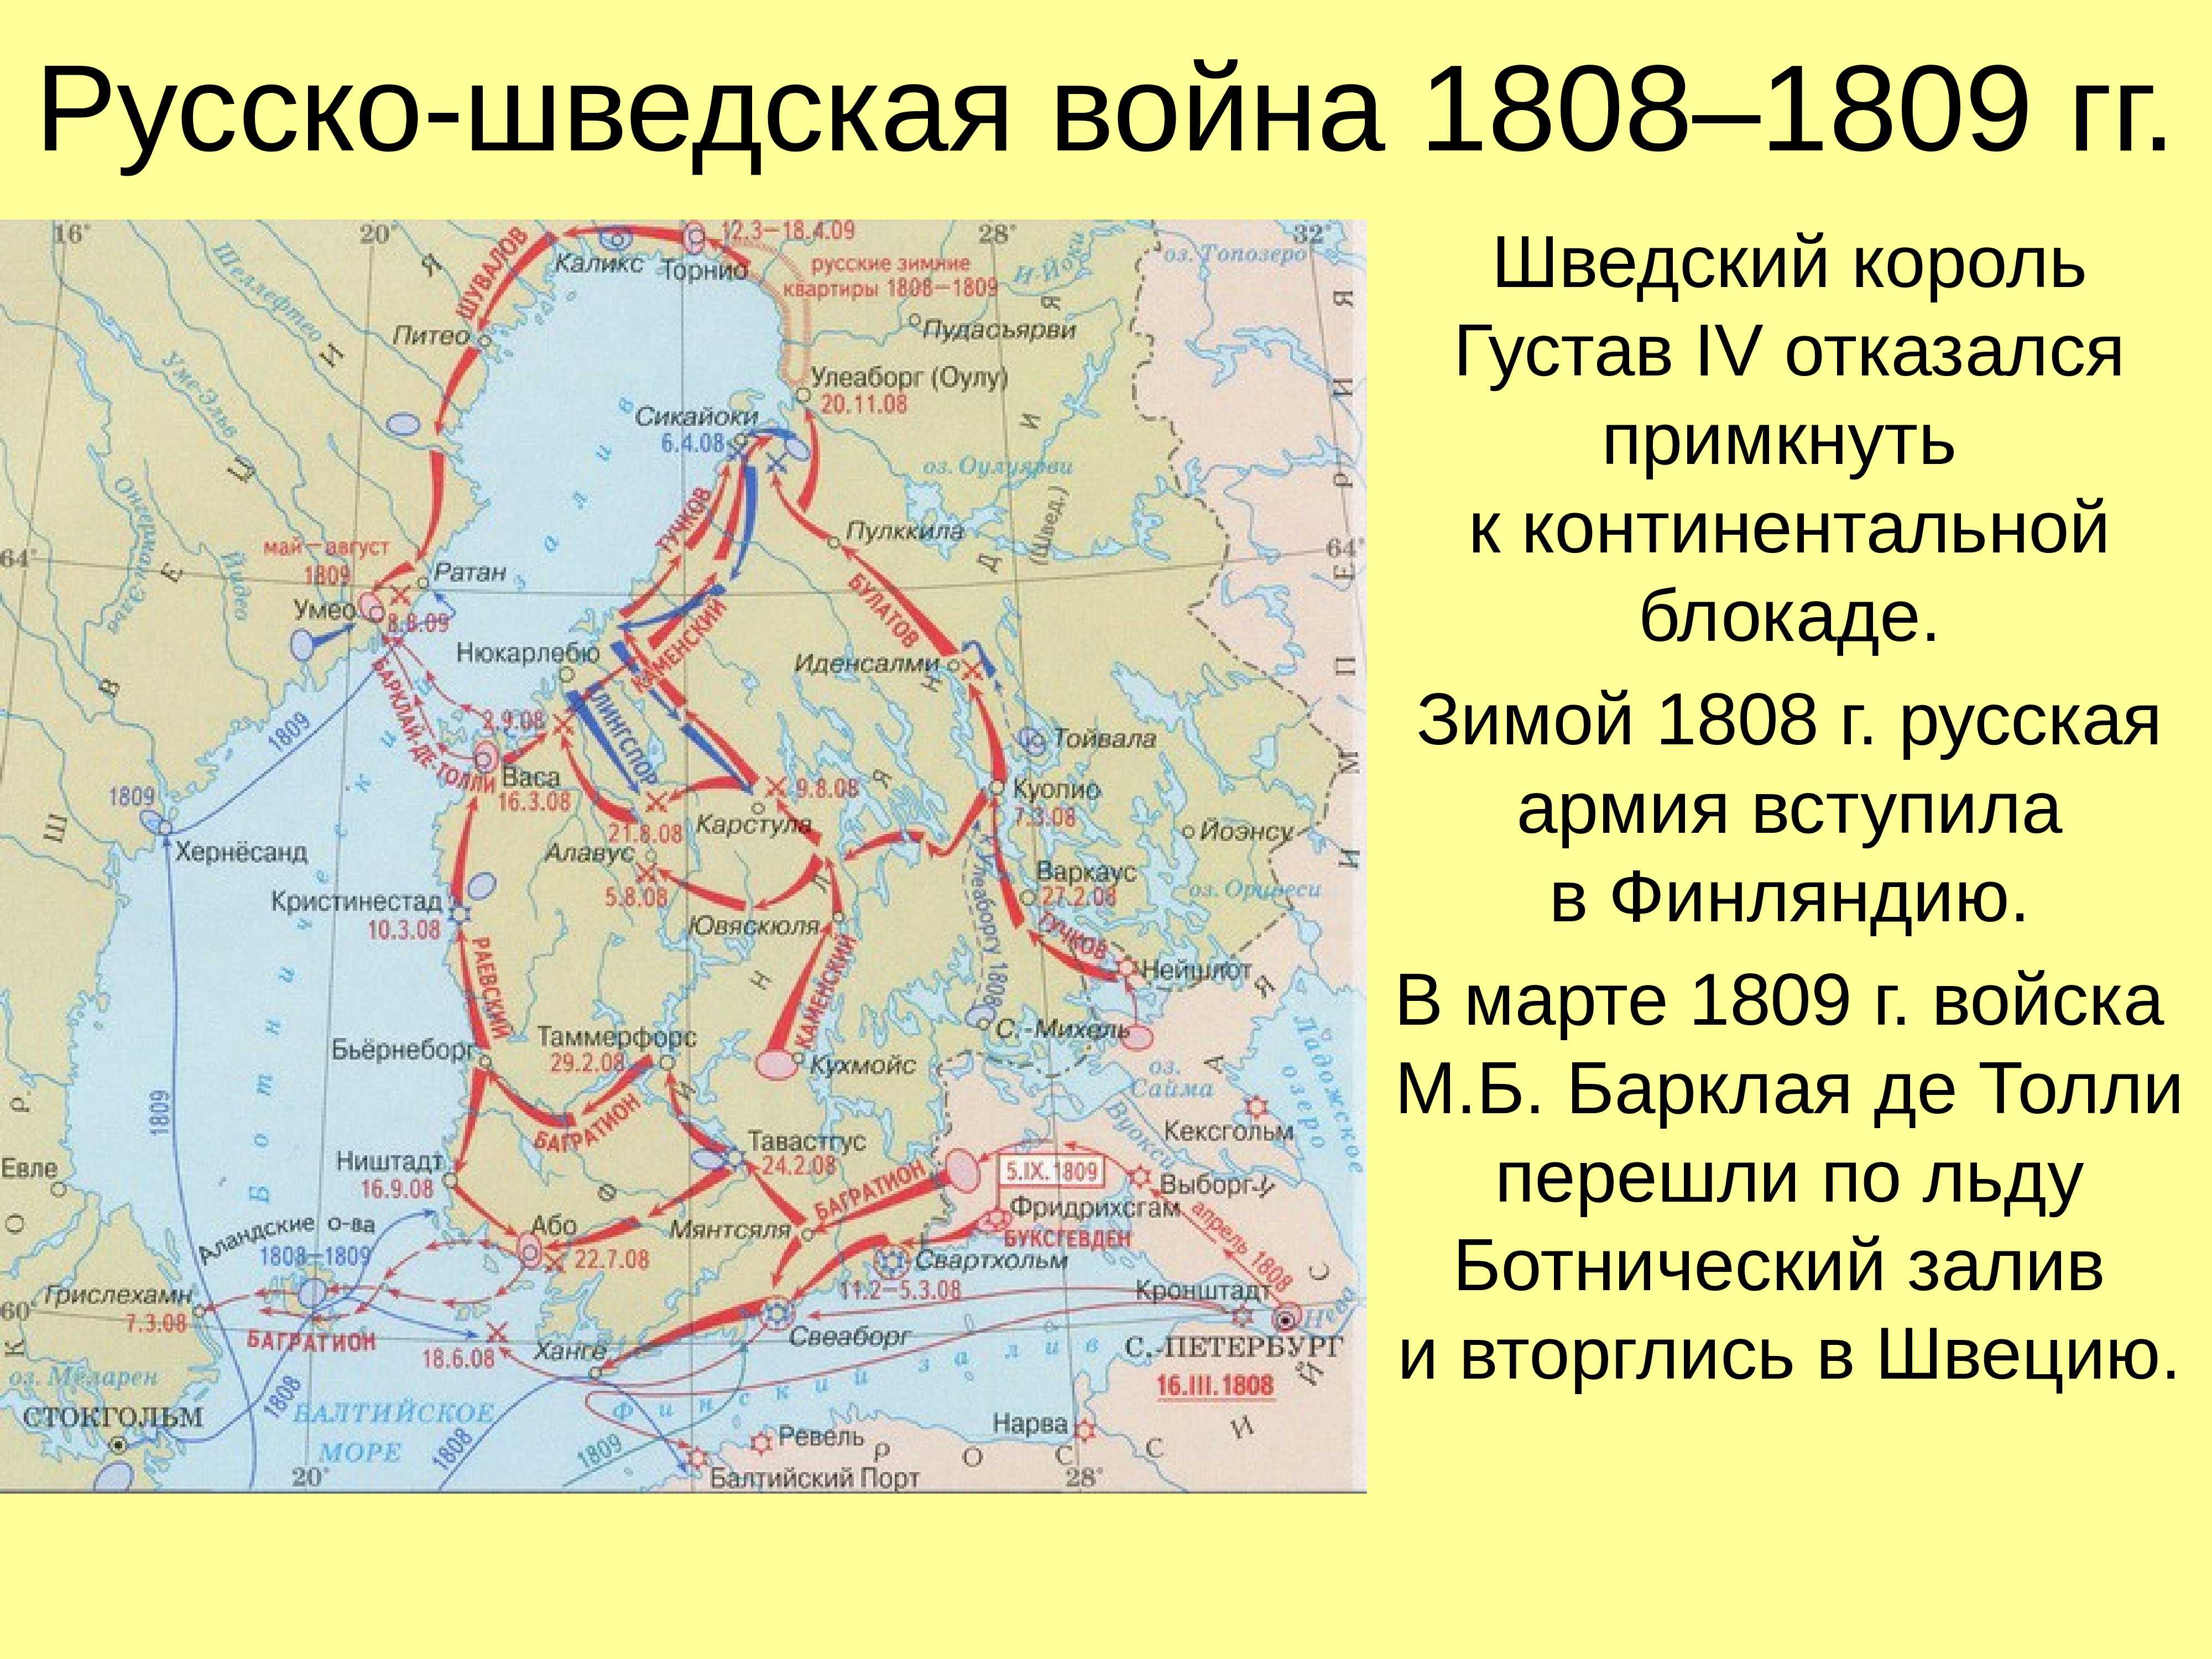 Как и когда произошло присоединение финляндии к российской империи